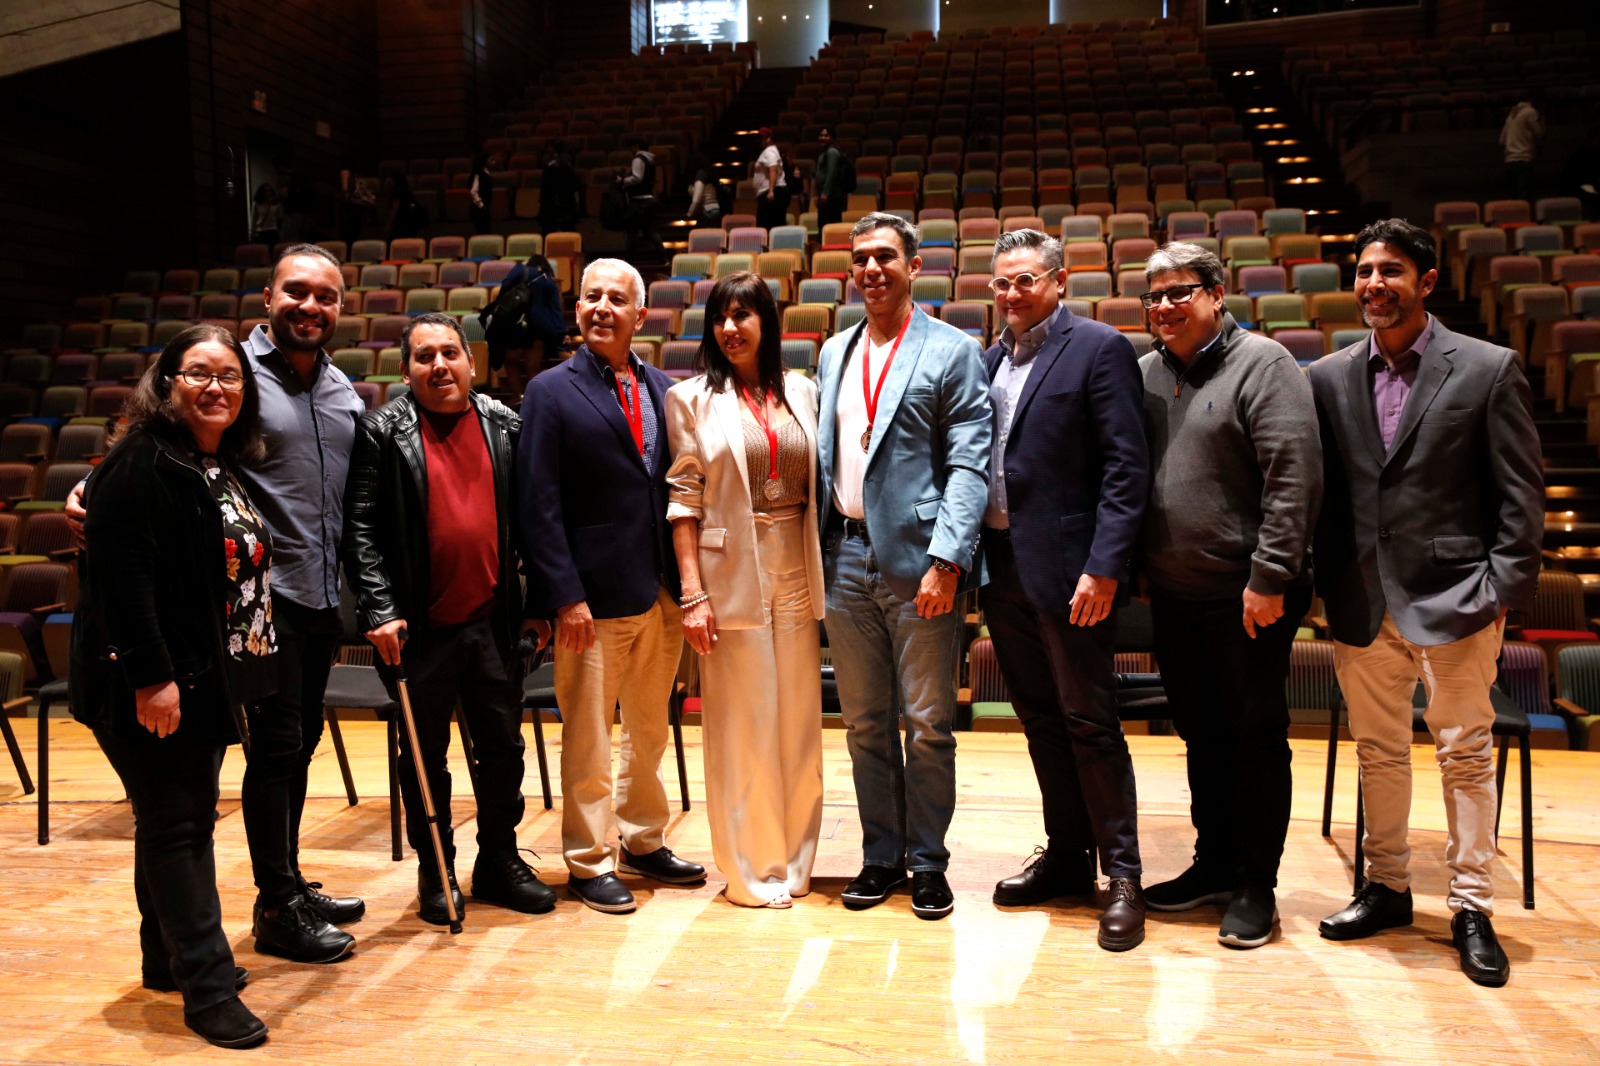 El Sistema Celebra Su Primer Latin Grammy Alcanzado Con La Obra Four Elements Immersive Symphony For Orchestra And Chorus